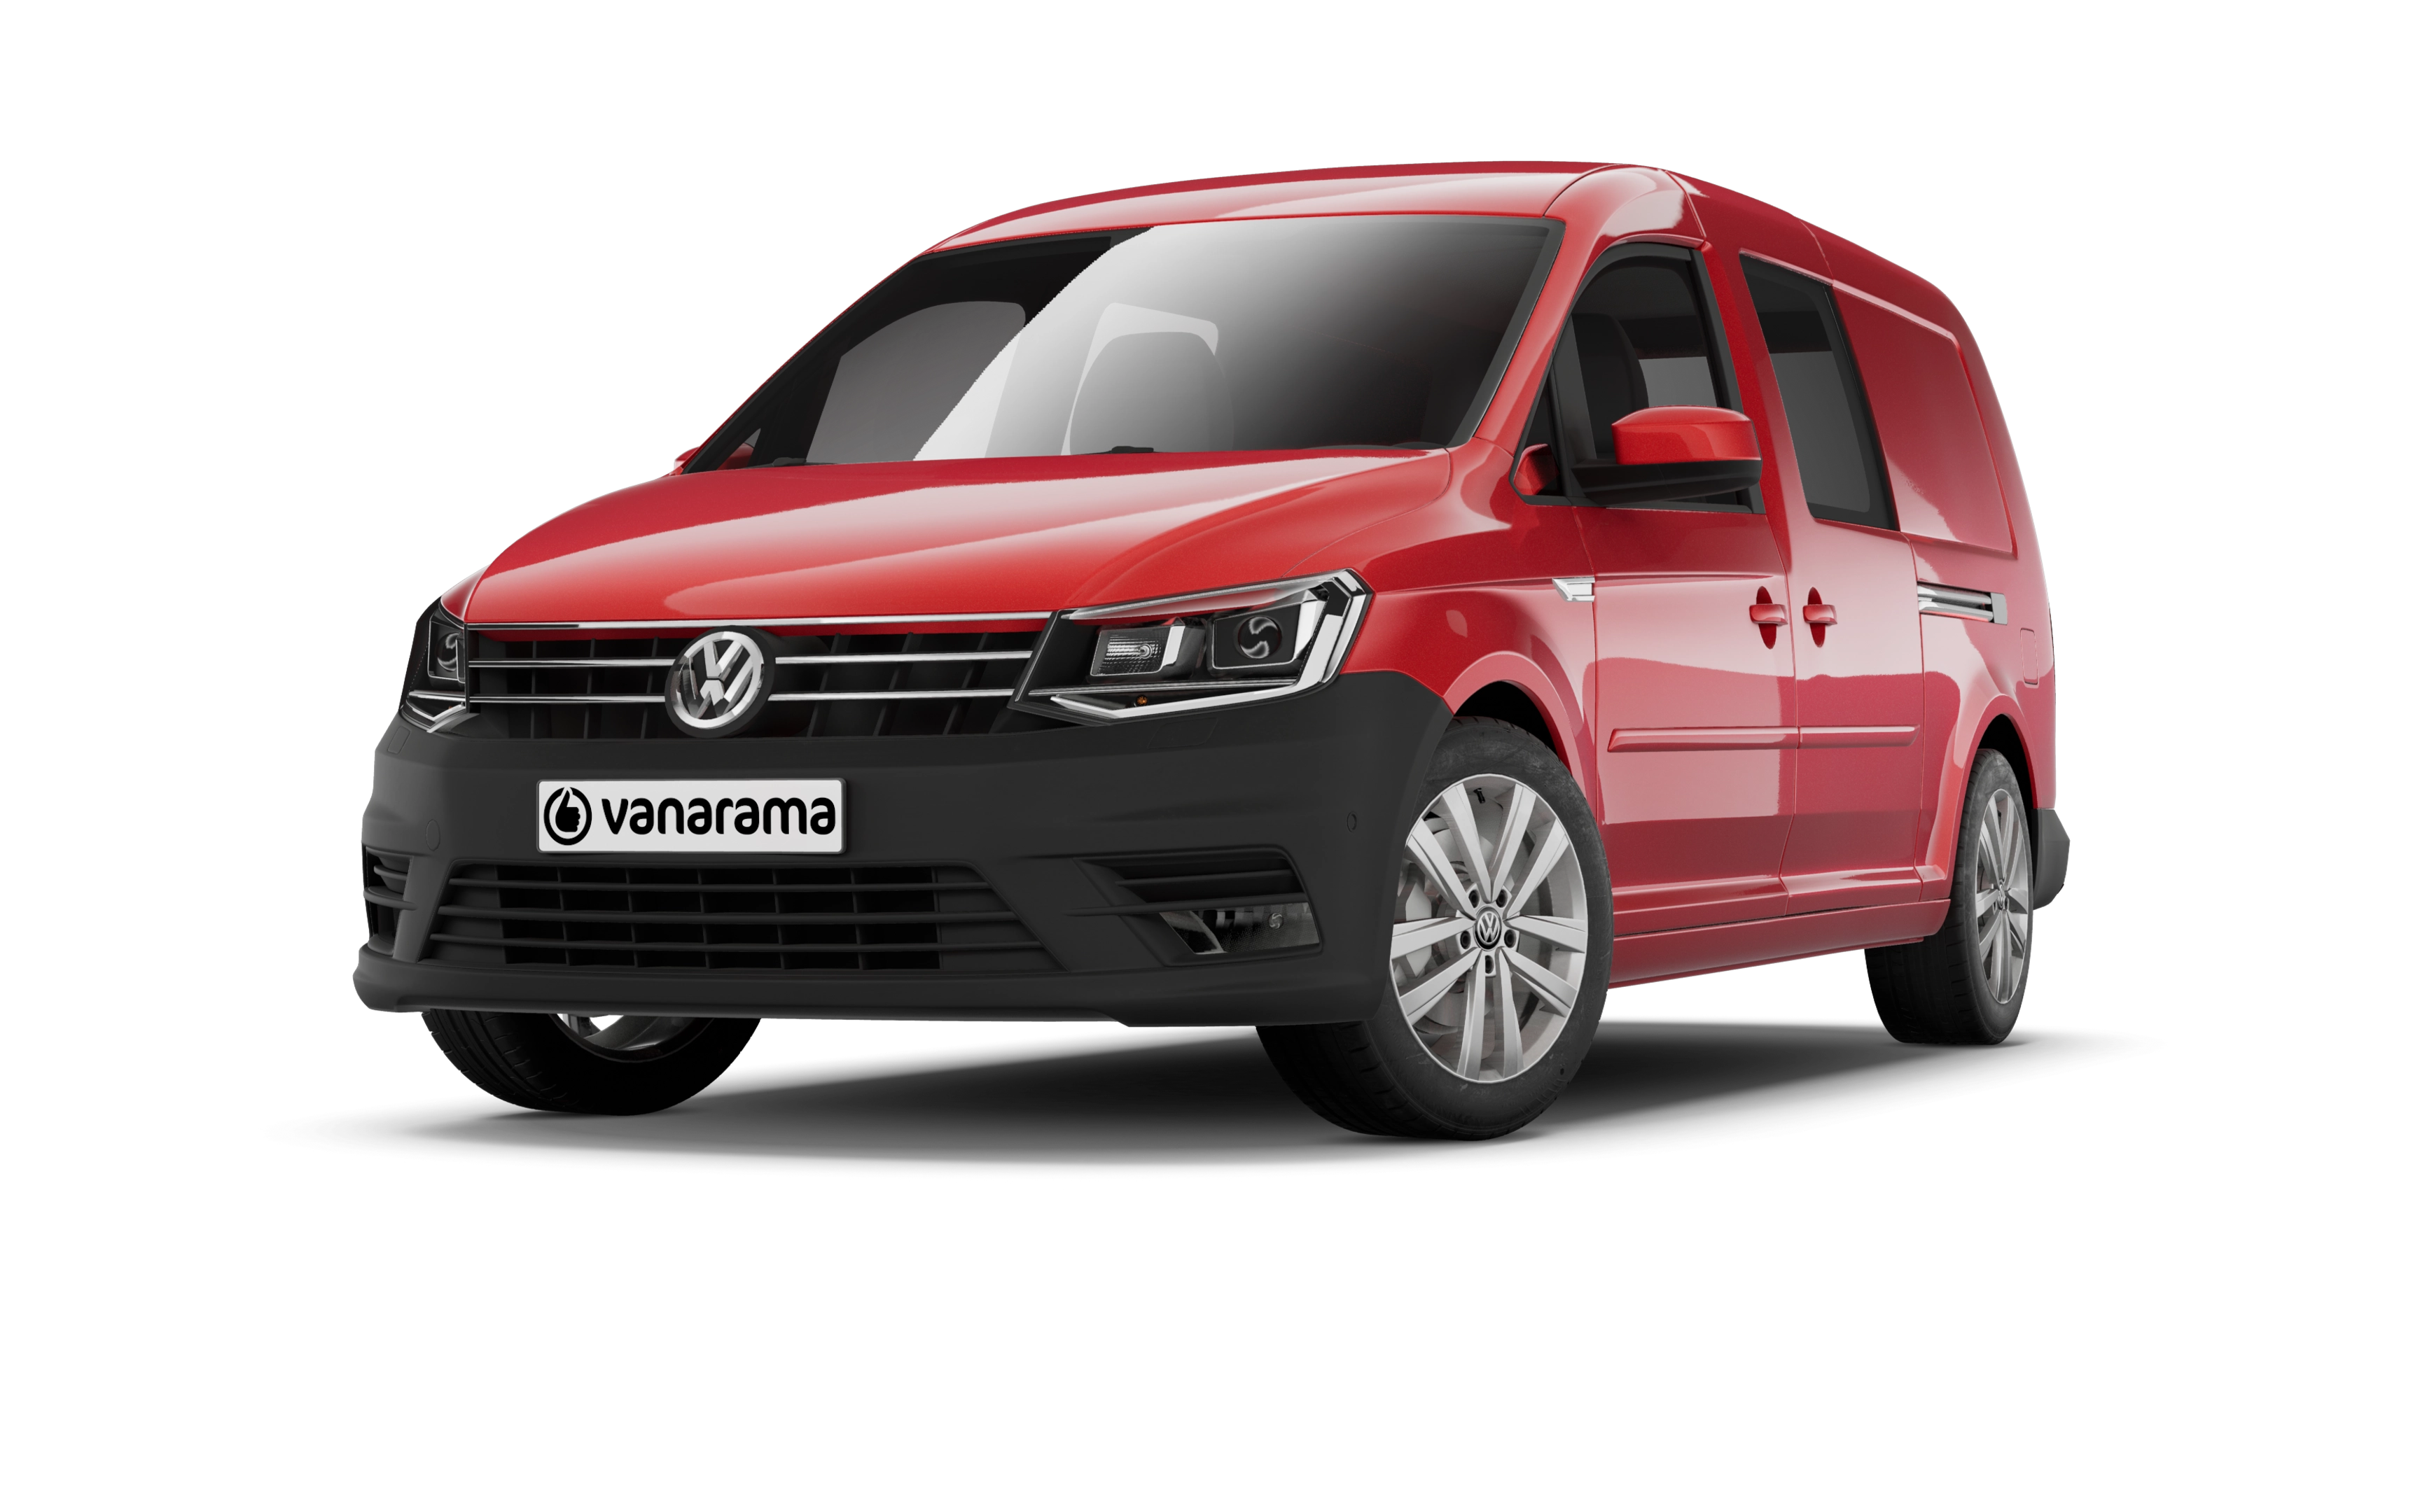 Volkswagen caddy maxi estate 2.0 tdi 122 5 doors dsg [5 seat]